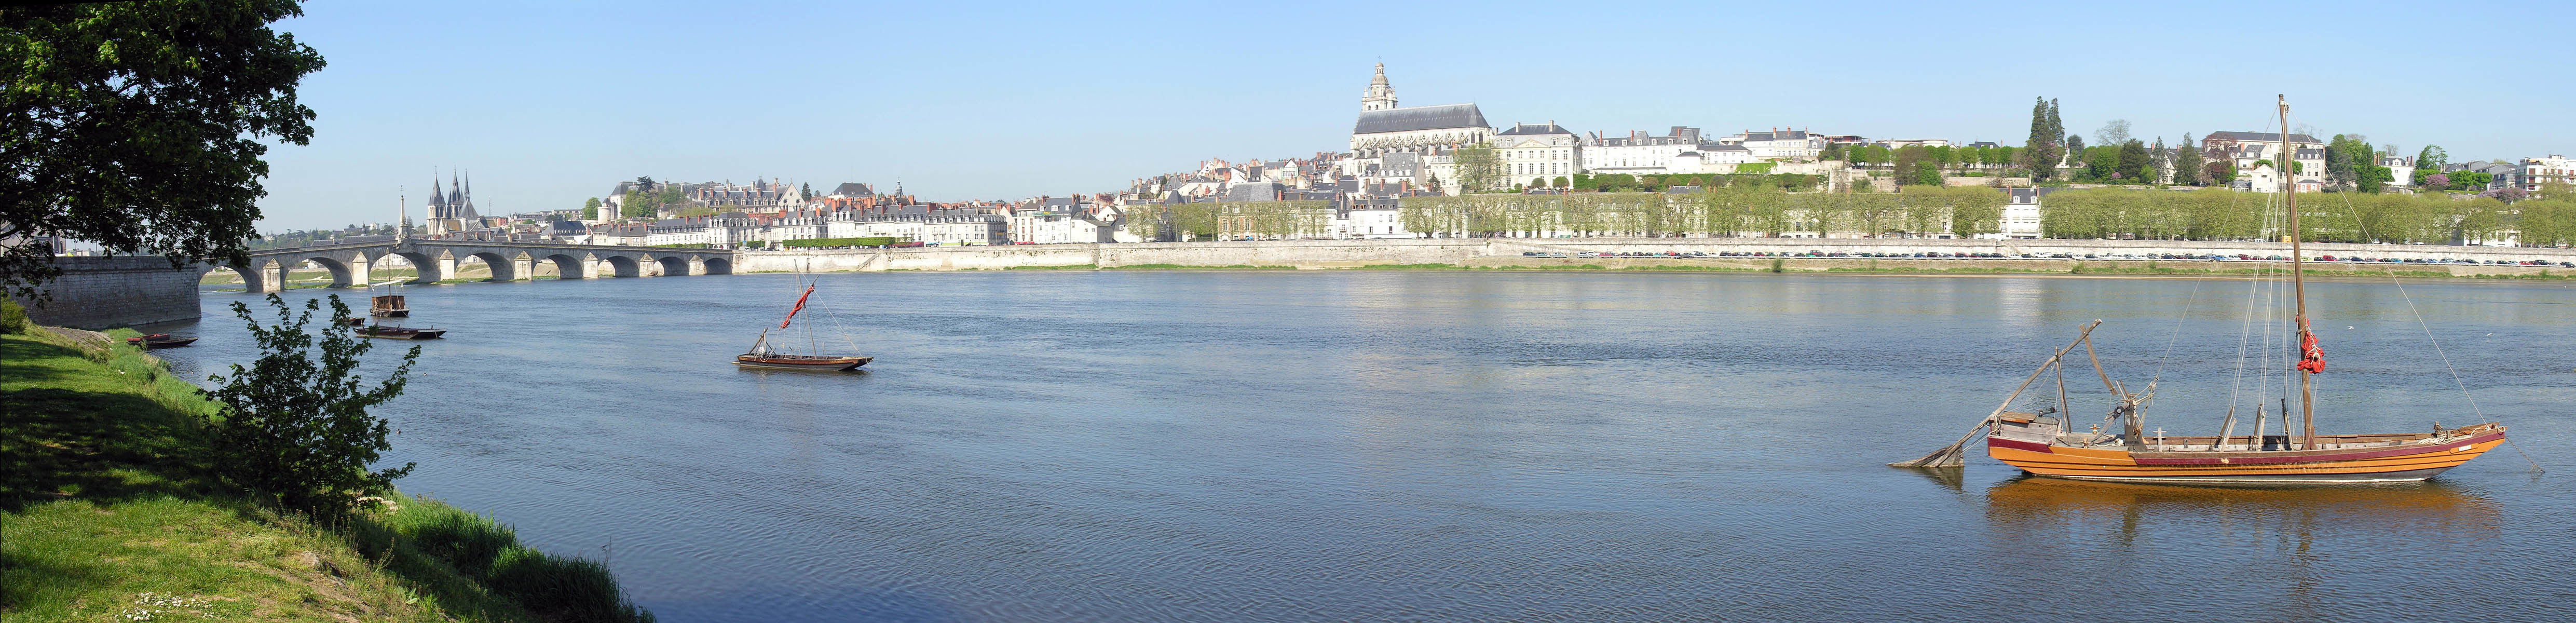 The Loire - Blois - France.jpg